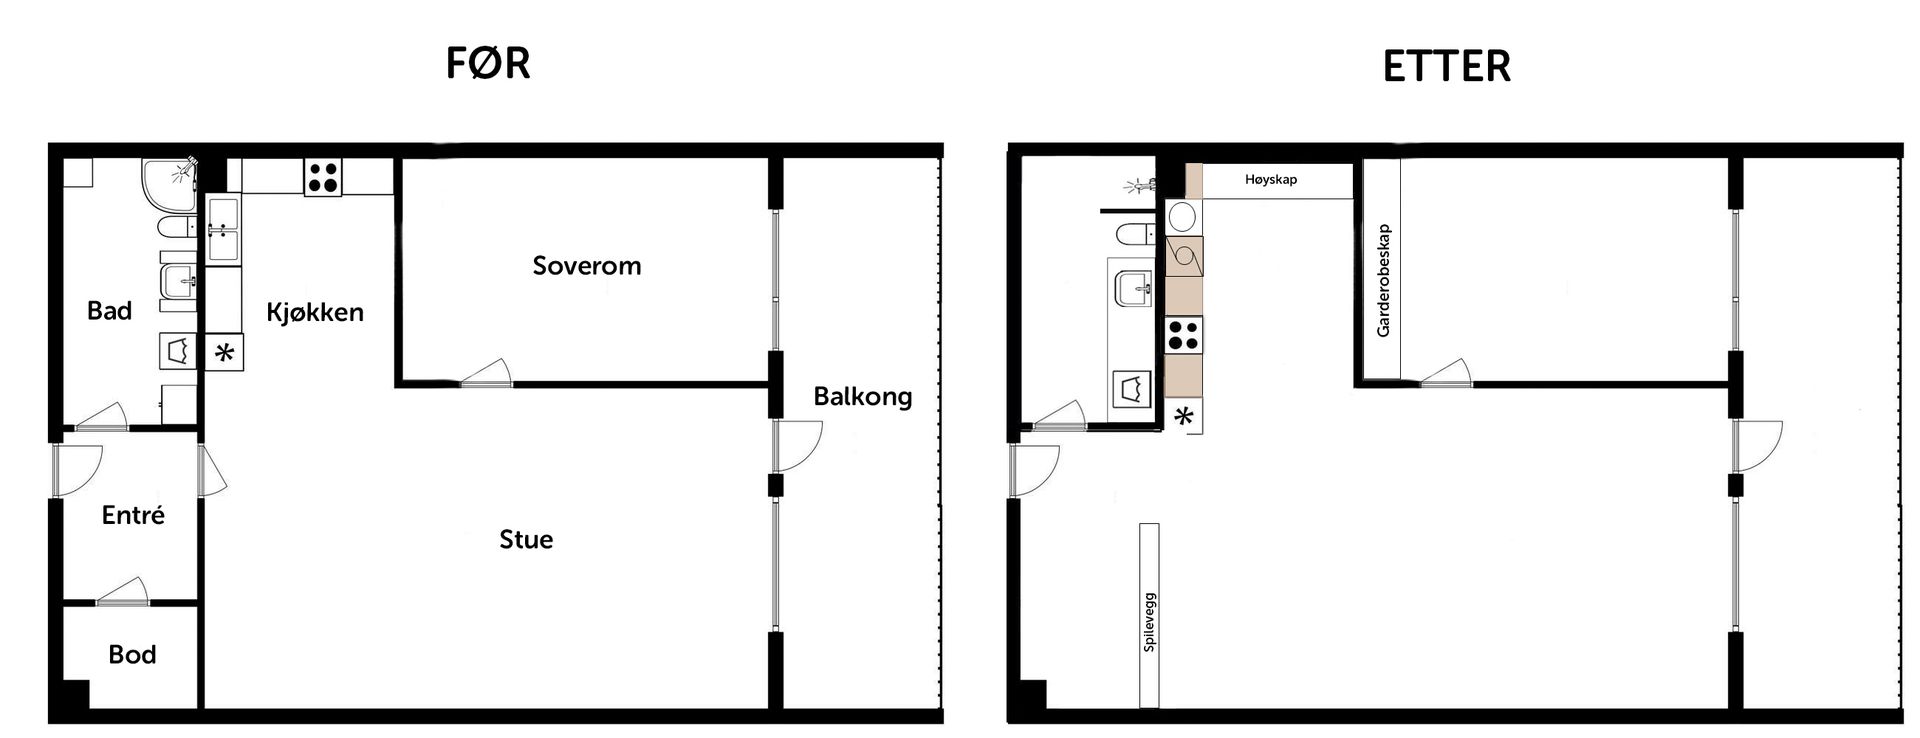 Plantegning av leilighet før og etter. Illustrasjon.